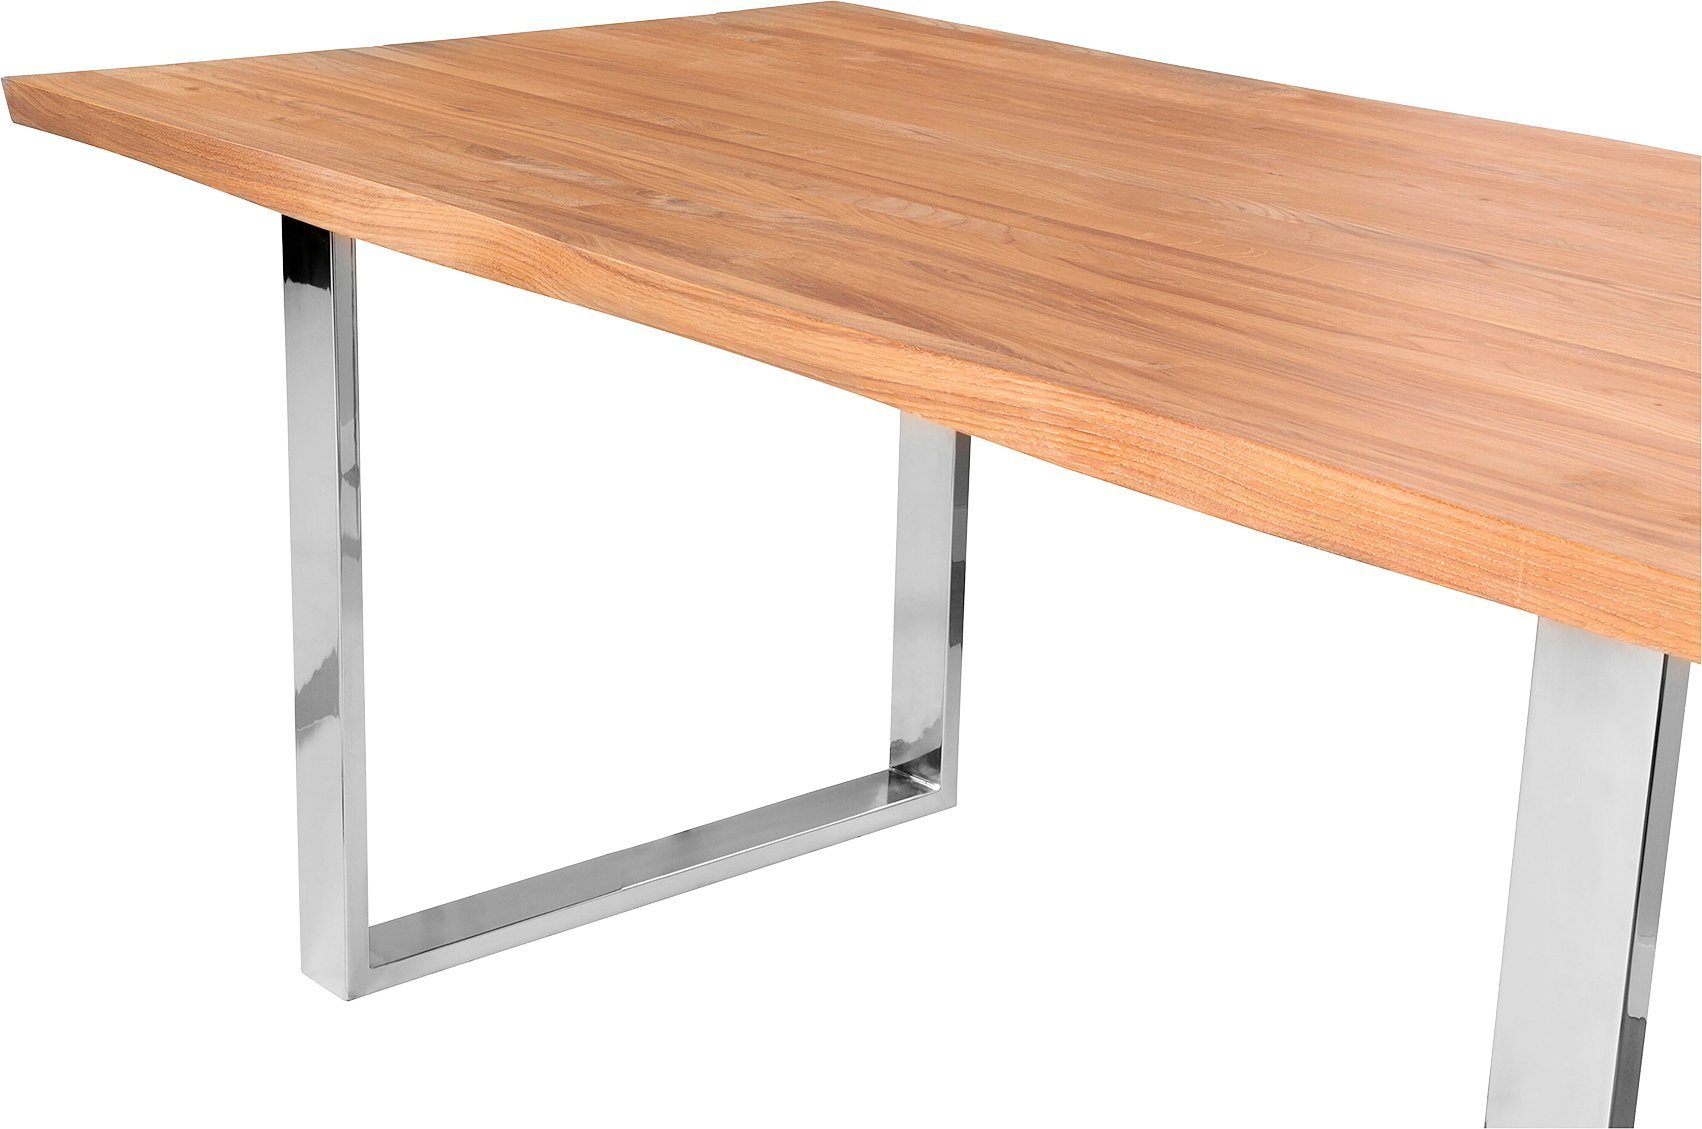 Fink Esstisch, Mit Tischplatte, geölt weiß seitlich geschwungener massive Form